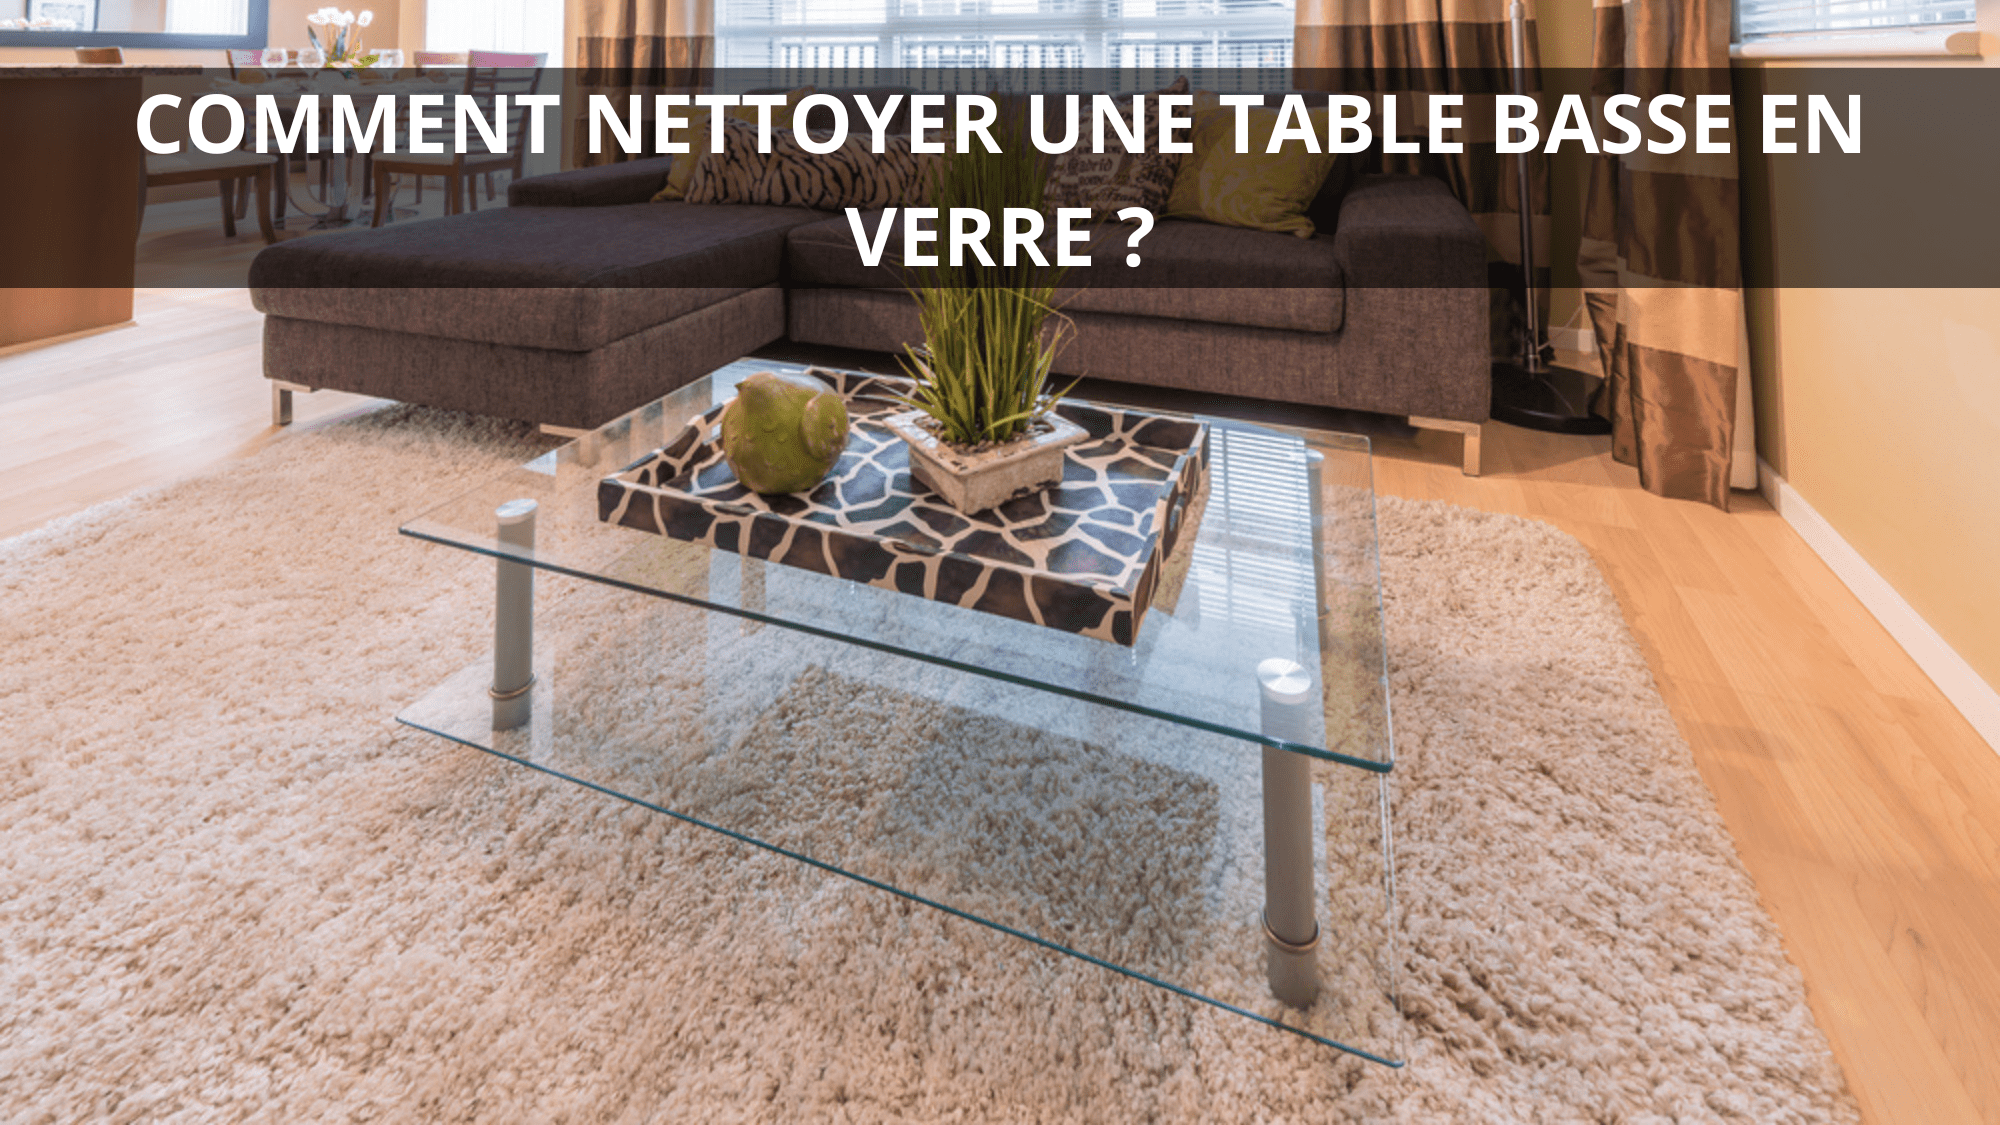 Comment nettoyer une table basse en verre ?